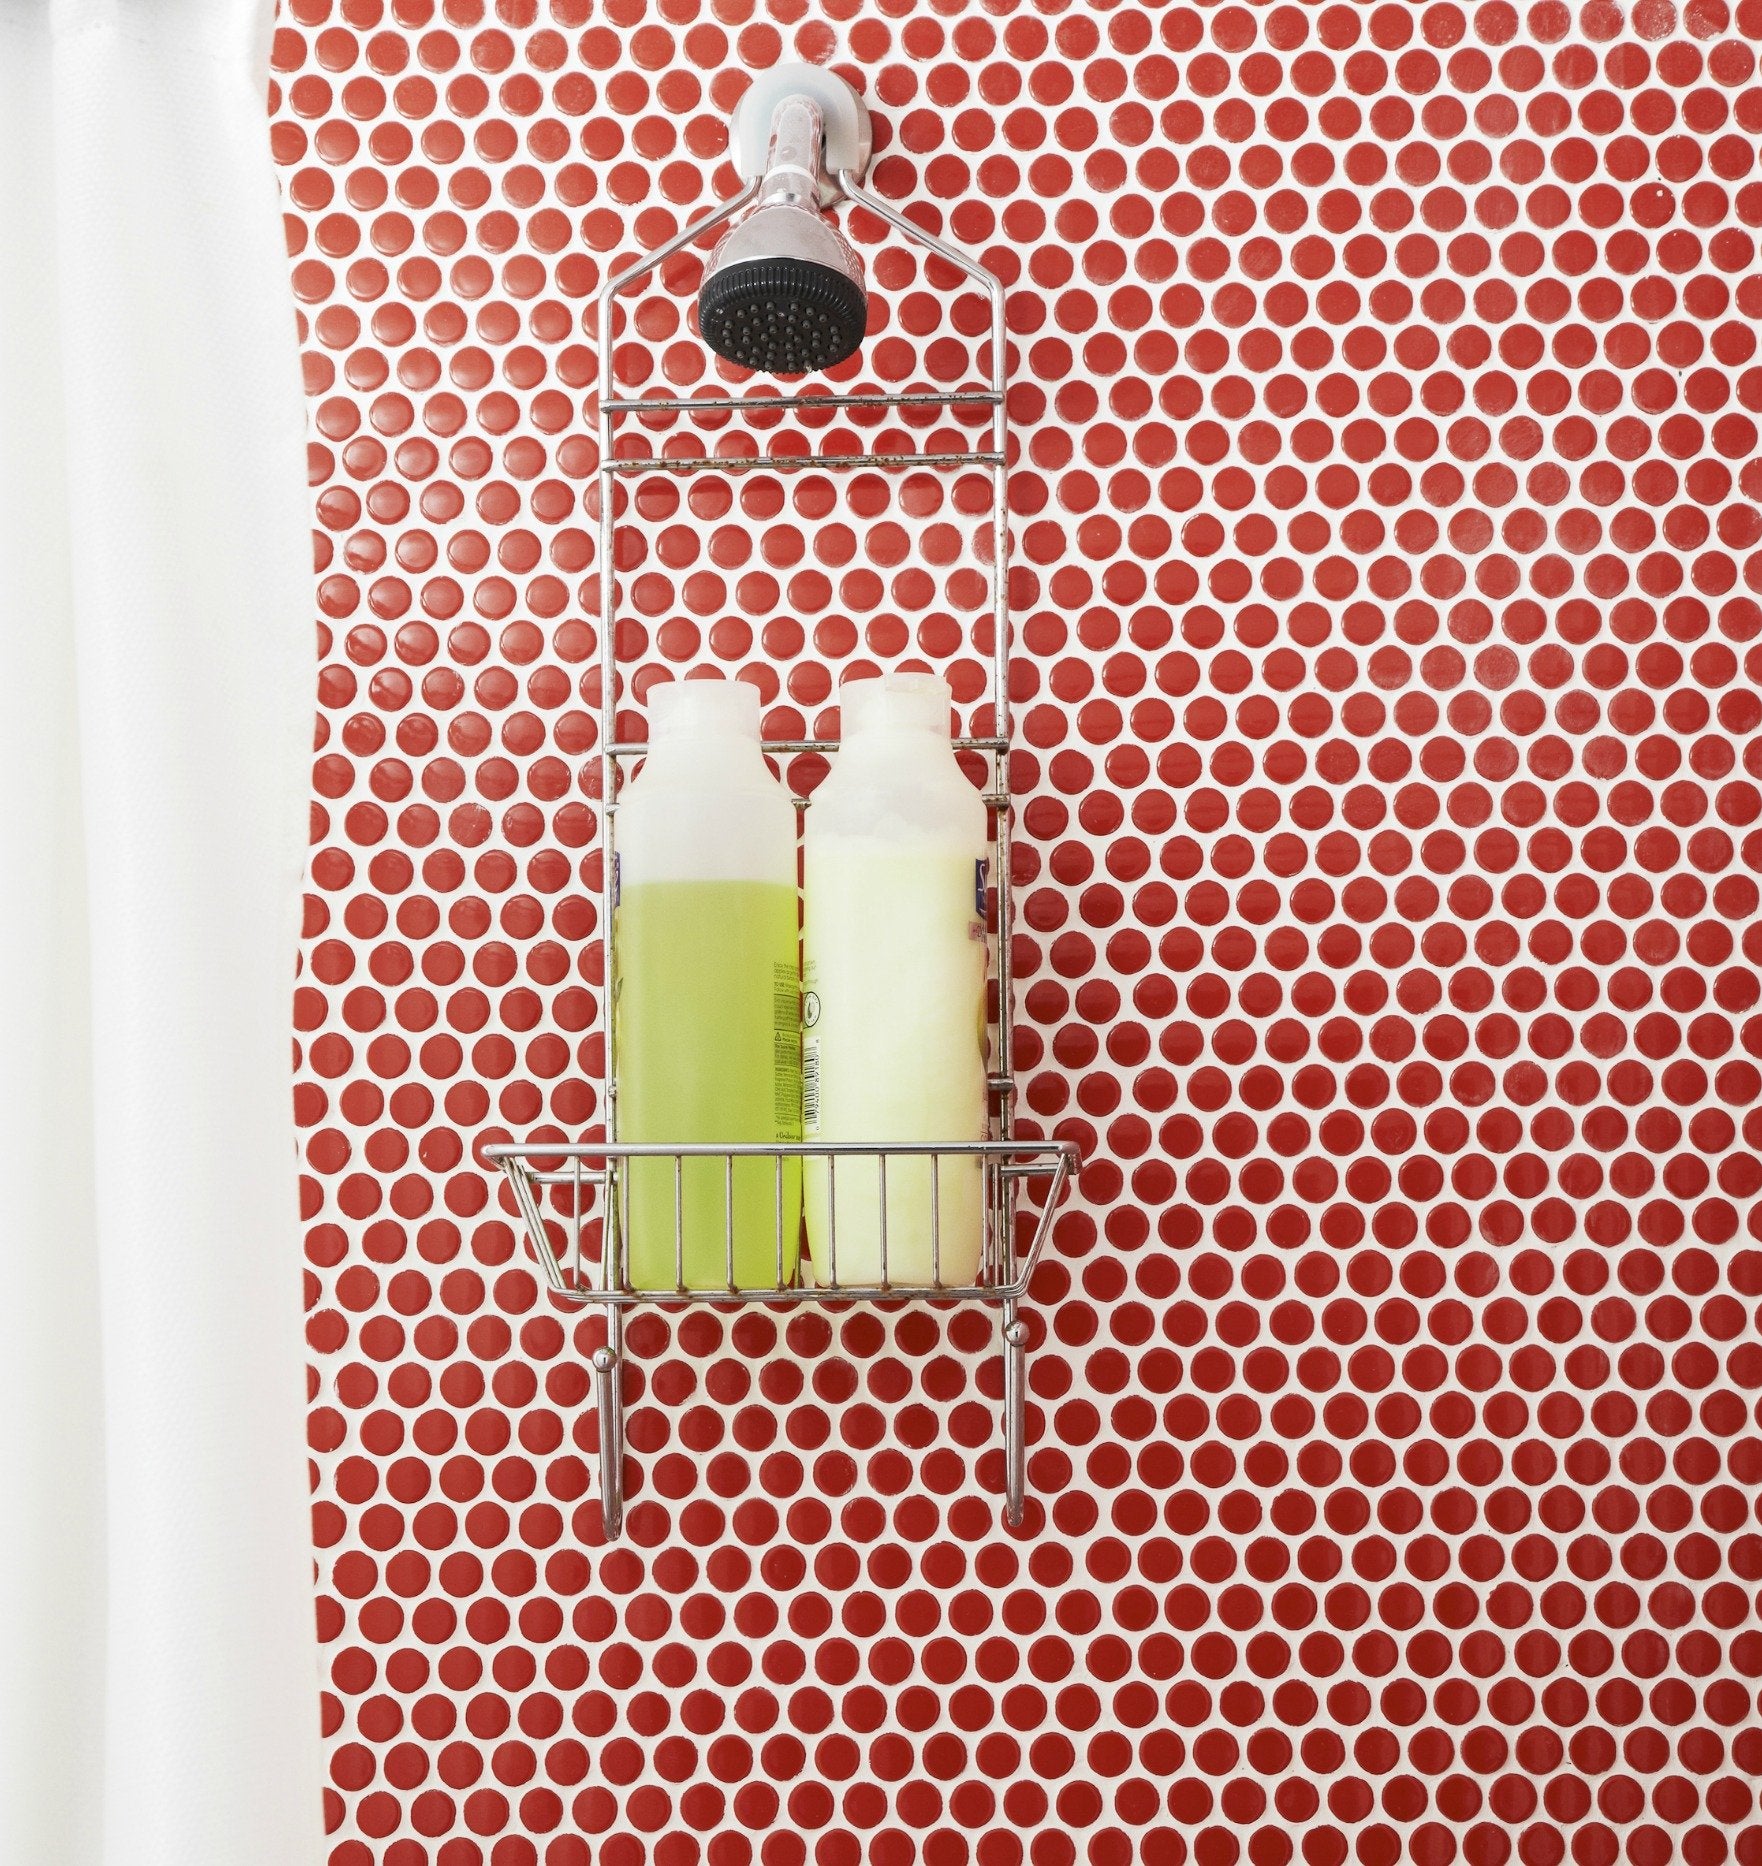 Penny Round Vintage Red Porcelain Mosaic Floor Wall Tile Backsplash for Bathroom Shower, Kitchen, Pool Tile, Accent décor